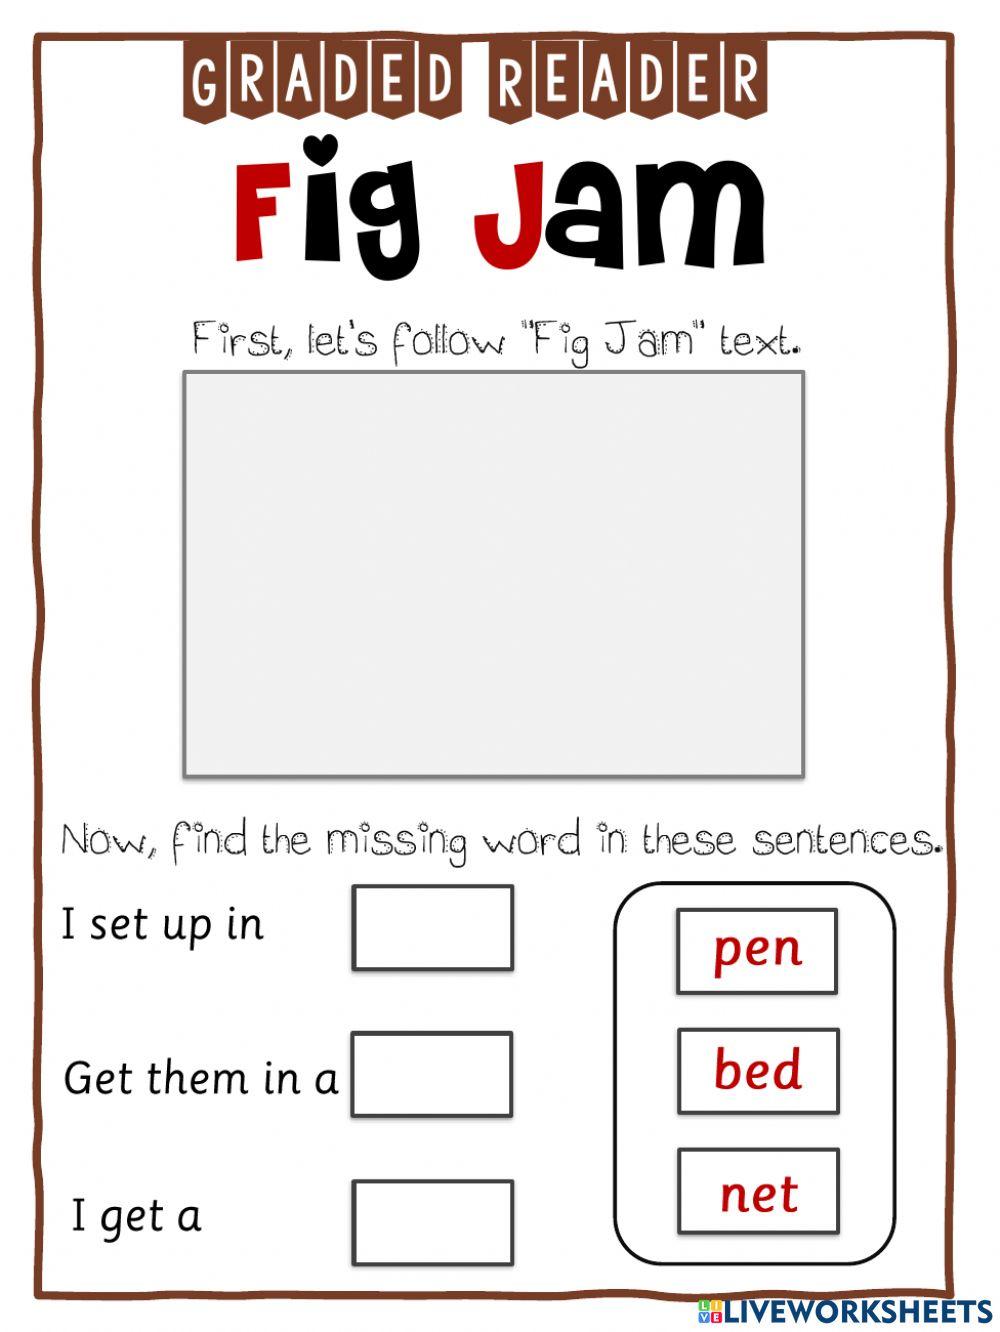 G1B-Grader Reader-Fig Jam